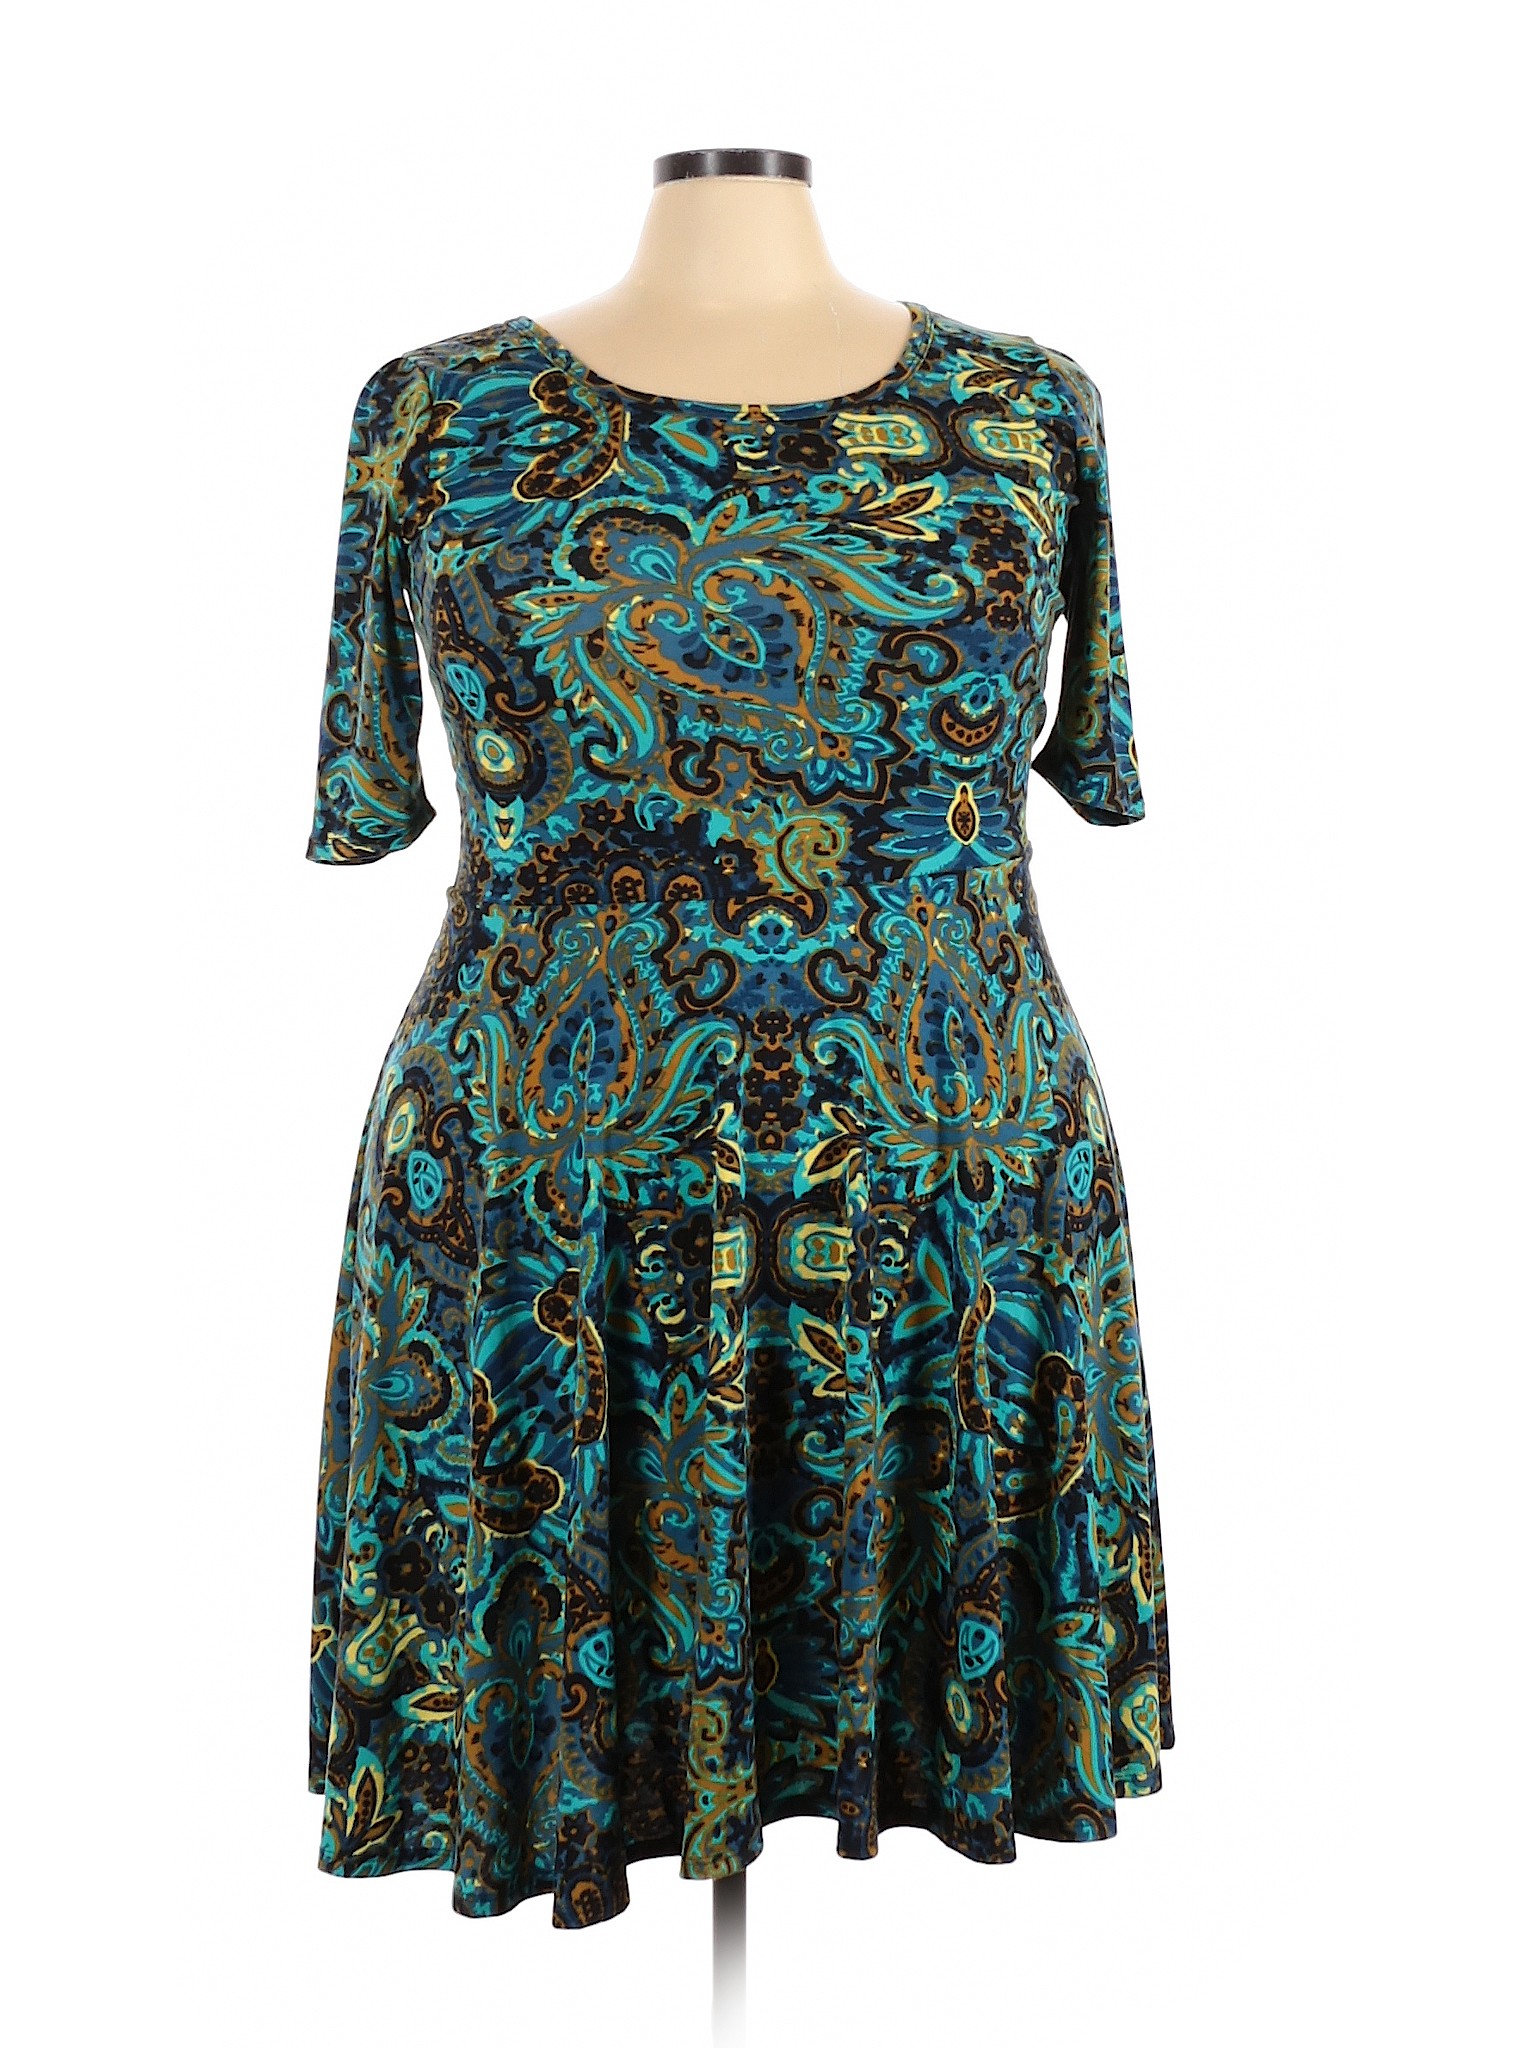 Lularoe Women Blue Casual Dress 3X Plus | eBay